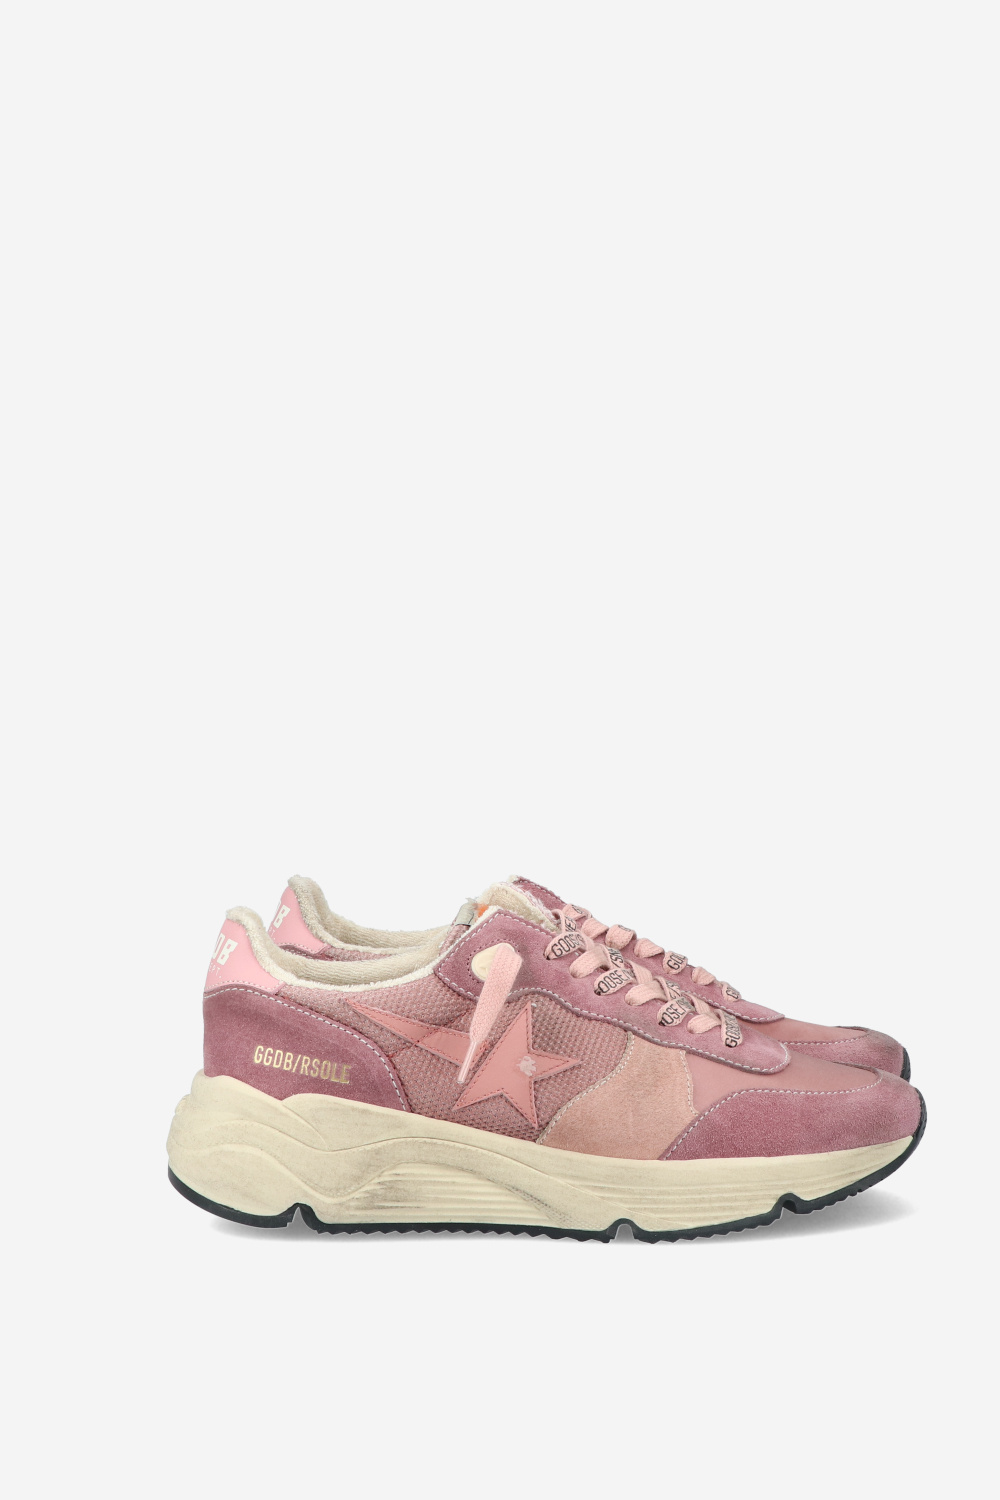 Golden Goose Sneakers Pink